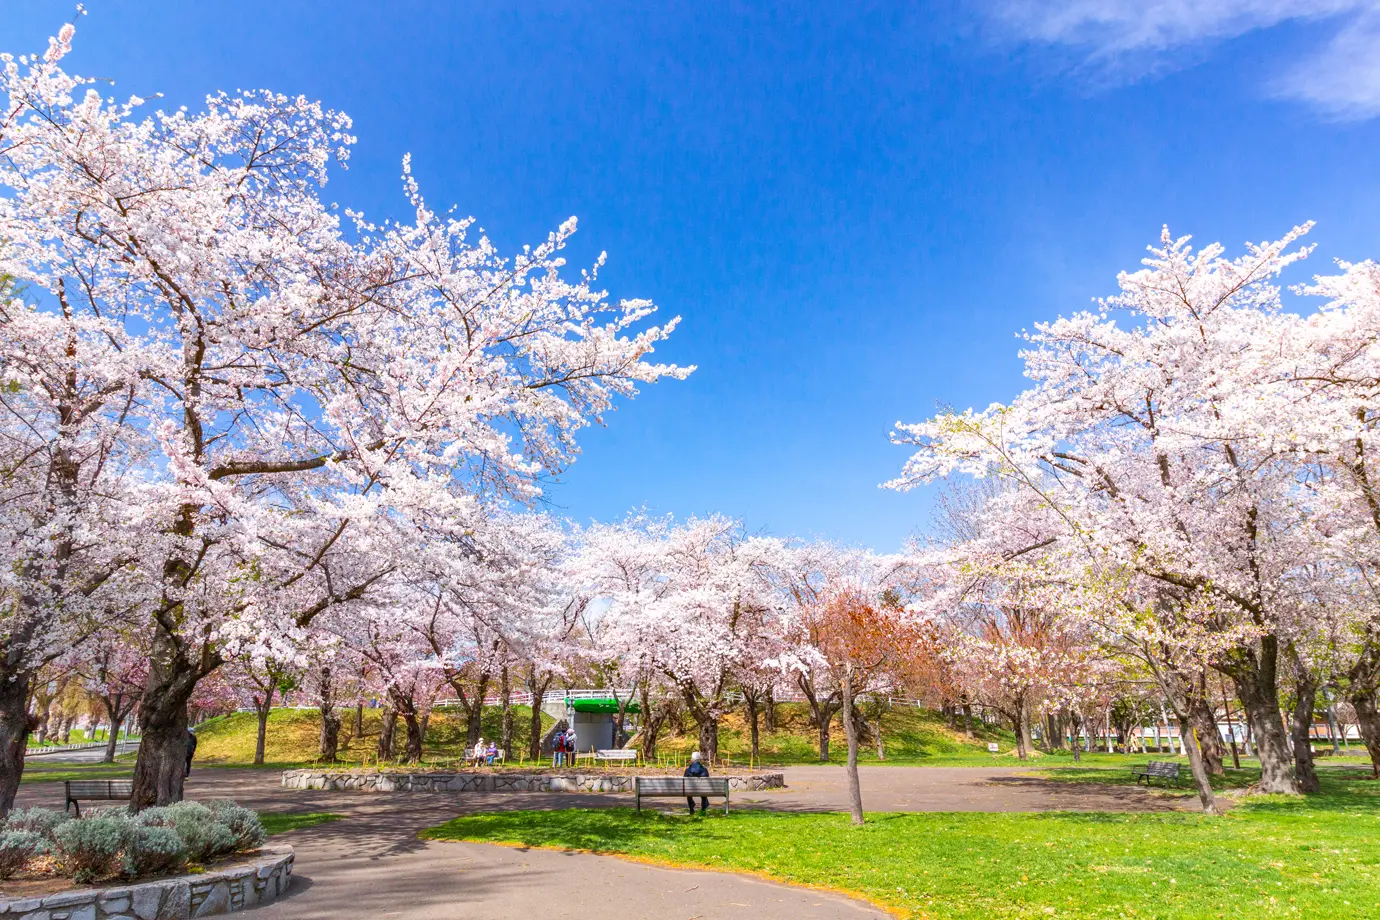 満開の桜咲き誇る農試公園の様子